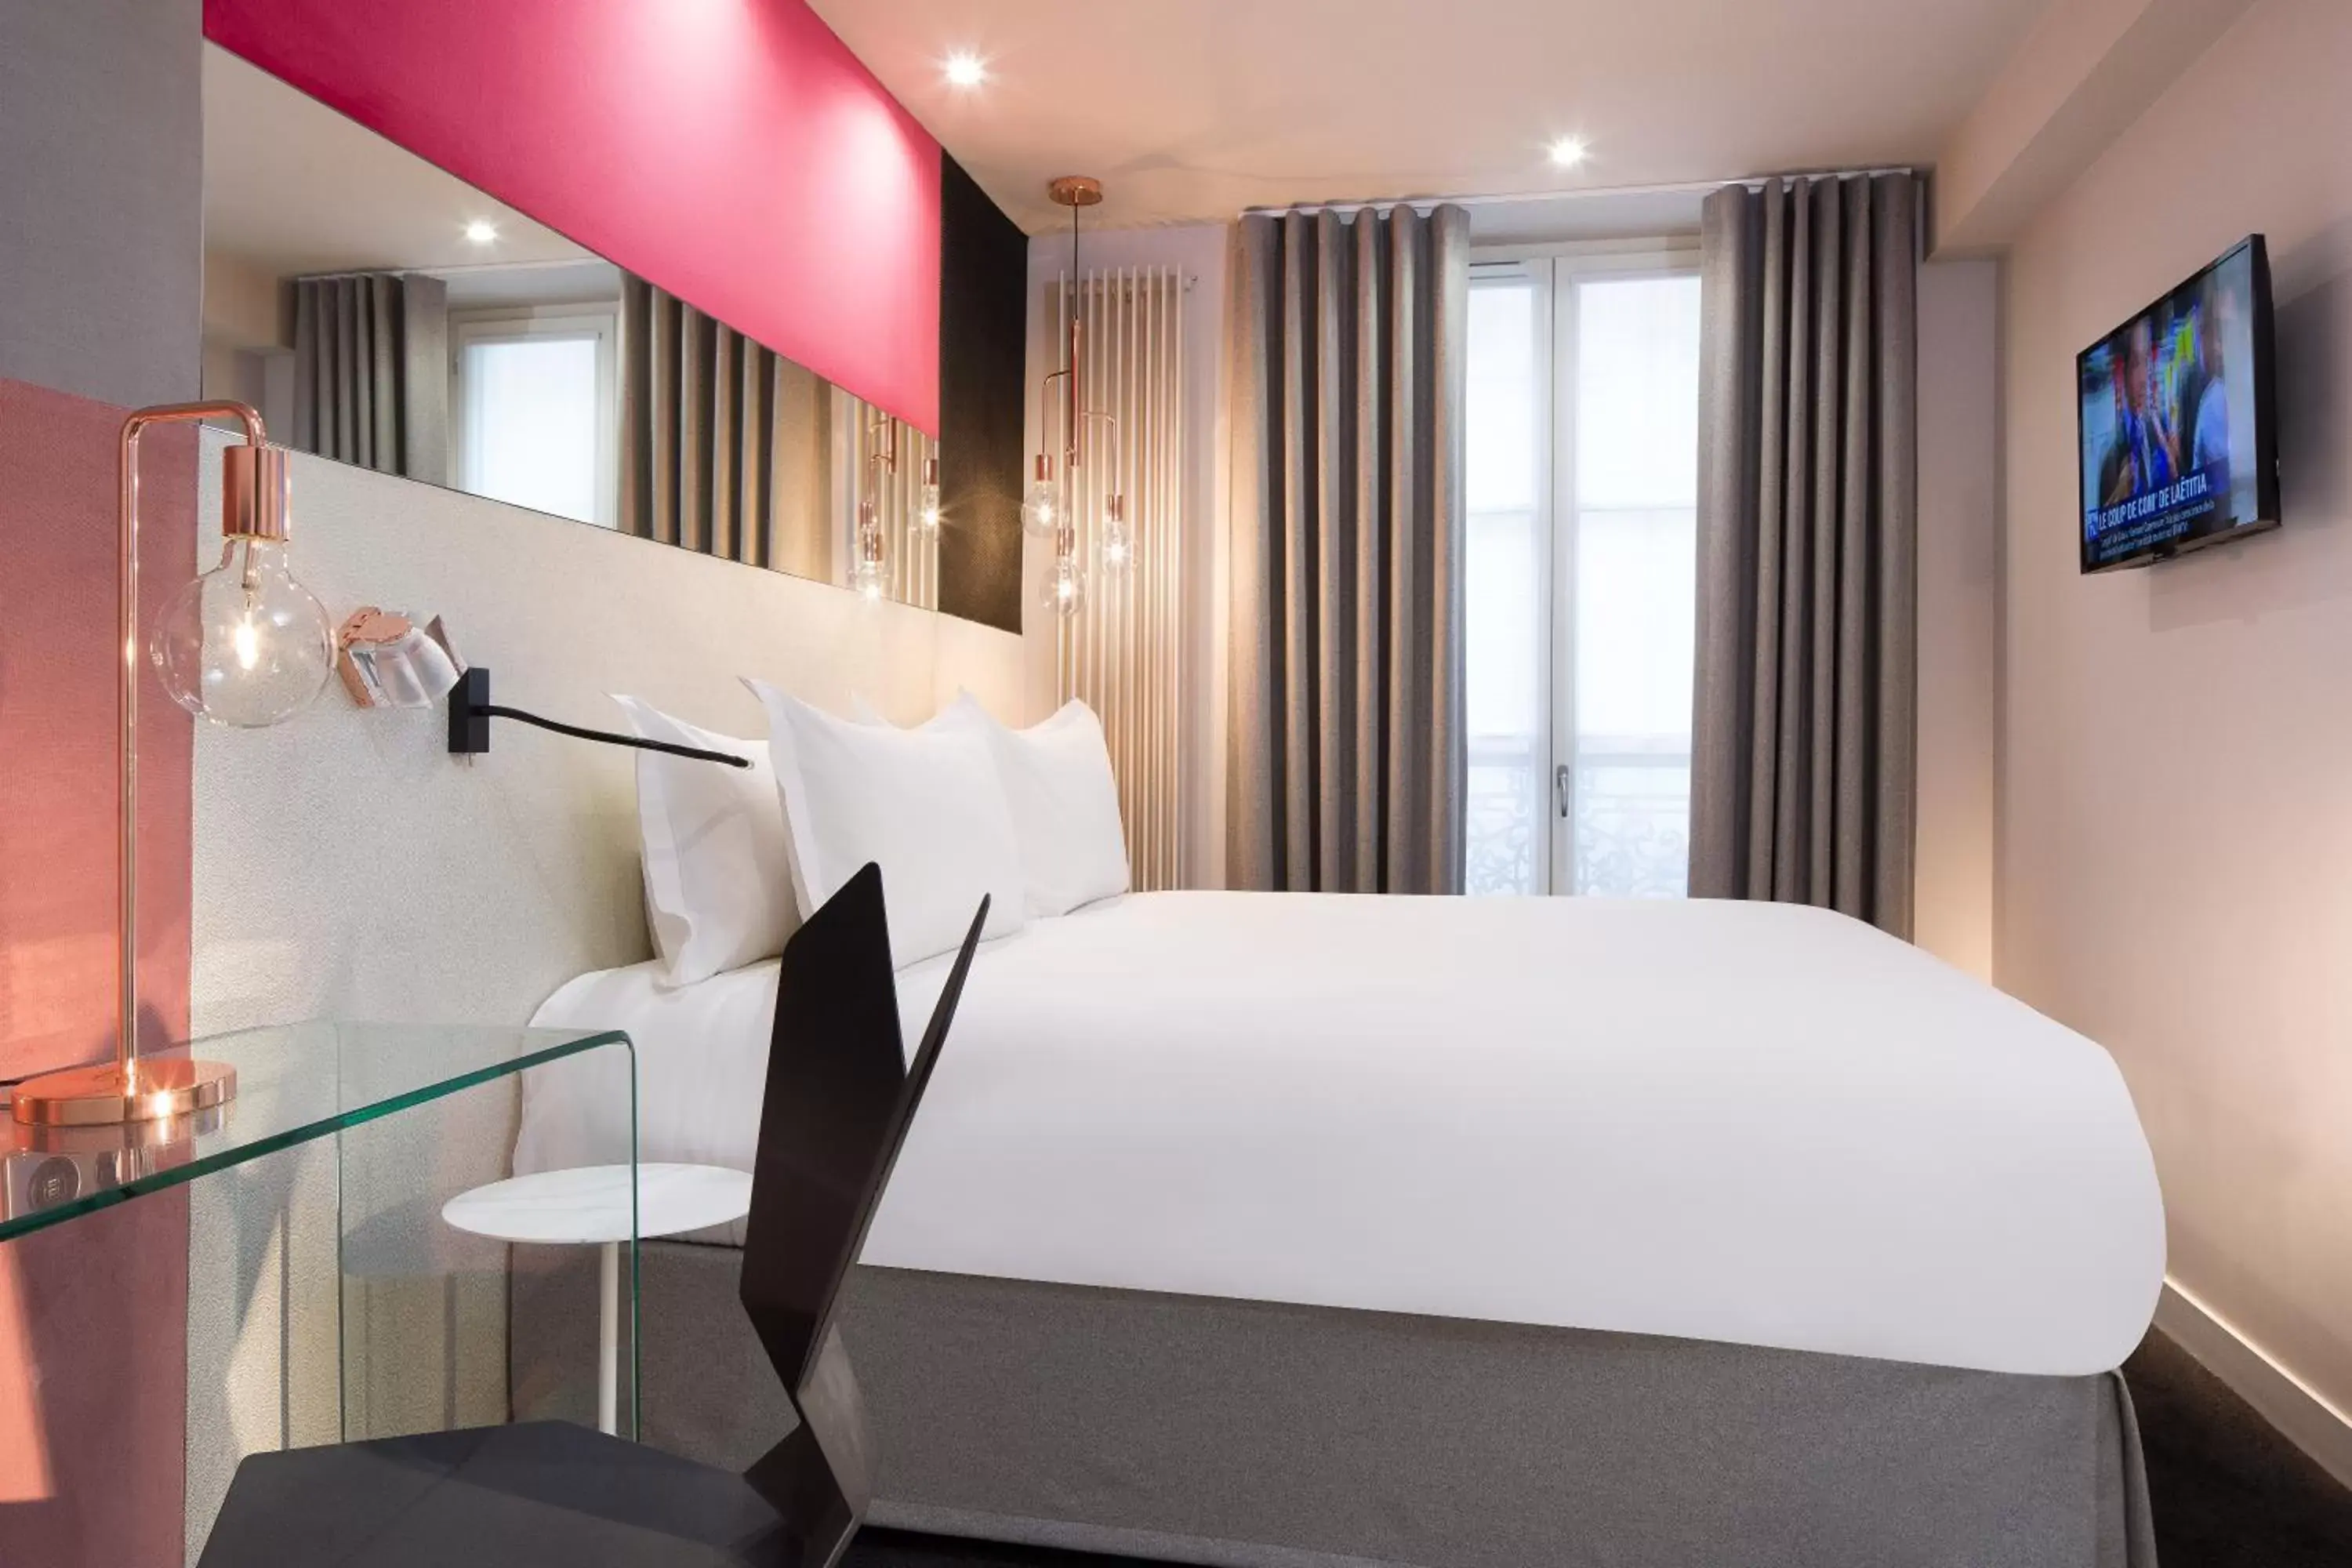 TV and multimedia, Room Photo in Hotel Duette Paris